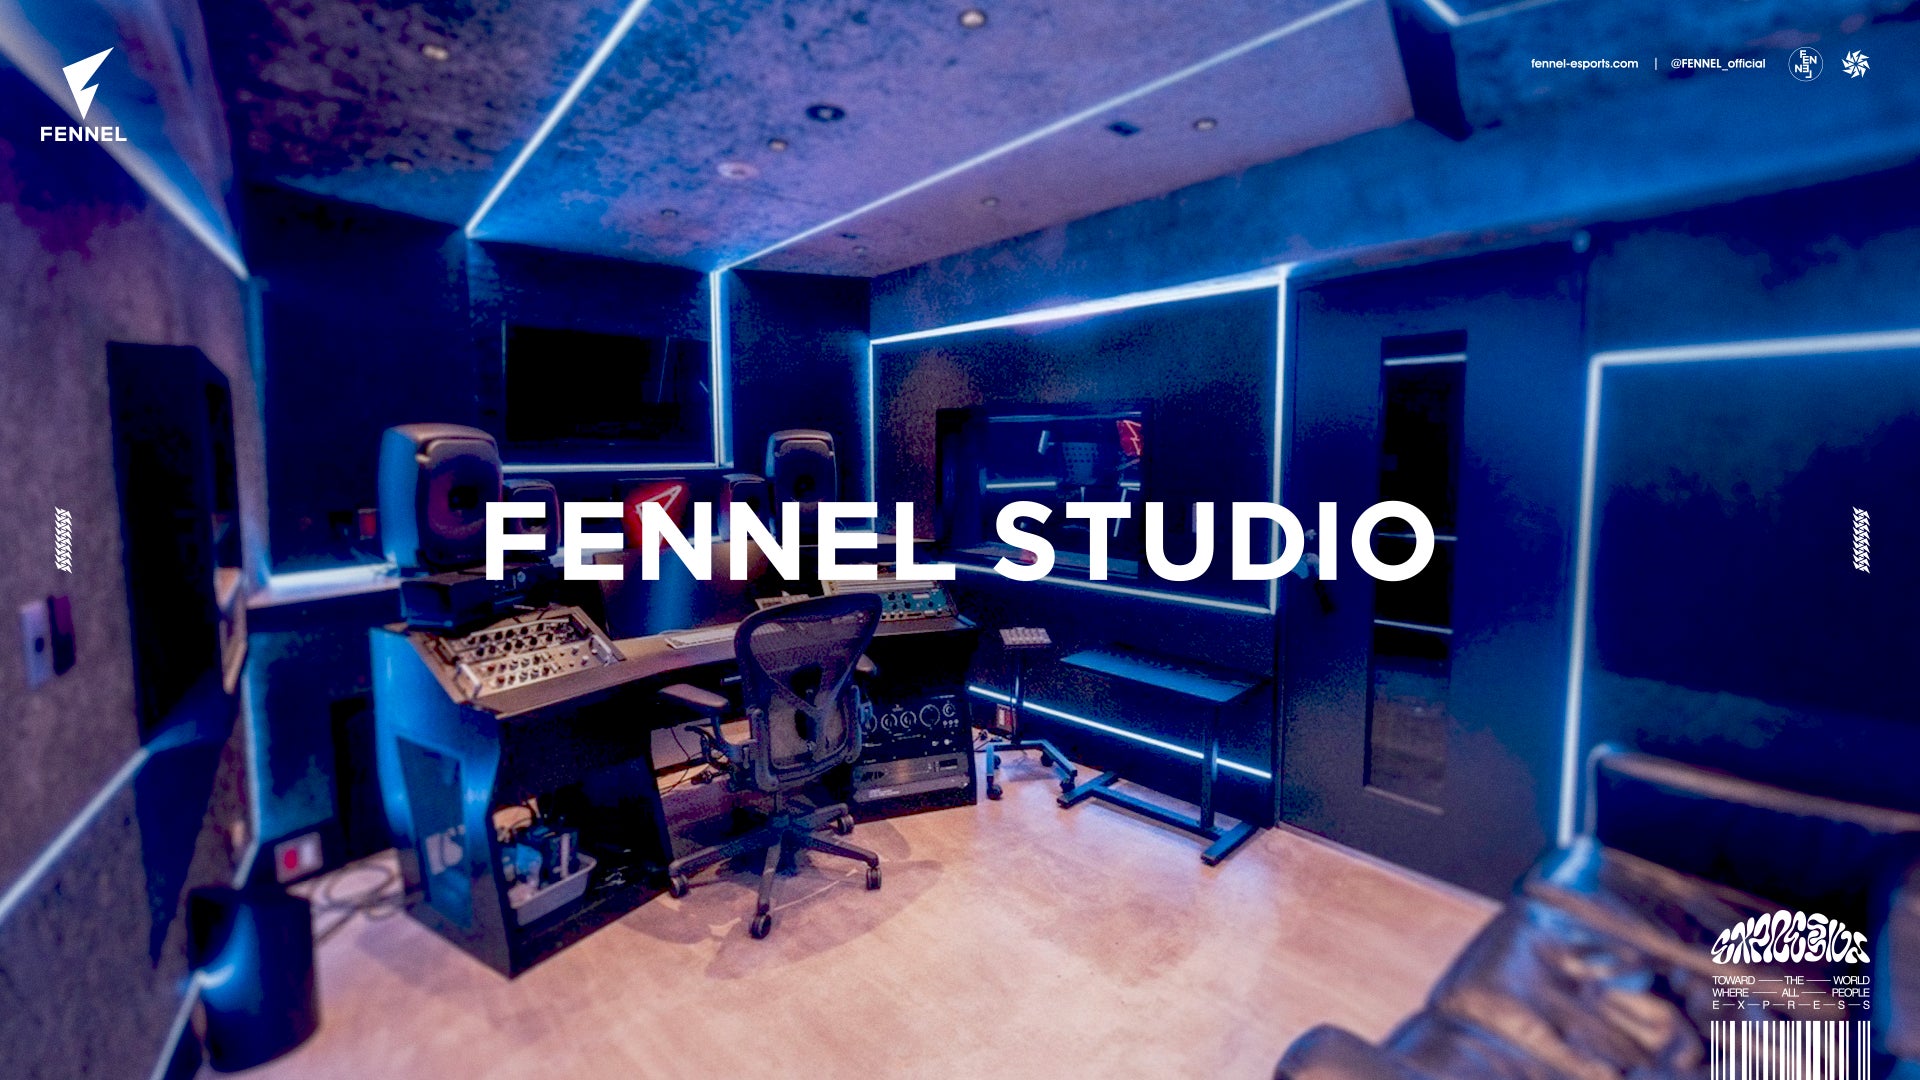 プロeスポーツチーム「FENNEL」、MAH（SiM） / サウンドエンジニア 原浩一 監修の音楽スタジオ「FENNEL STUDIO」を設立